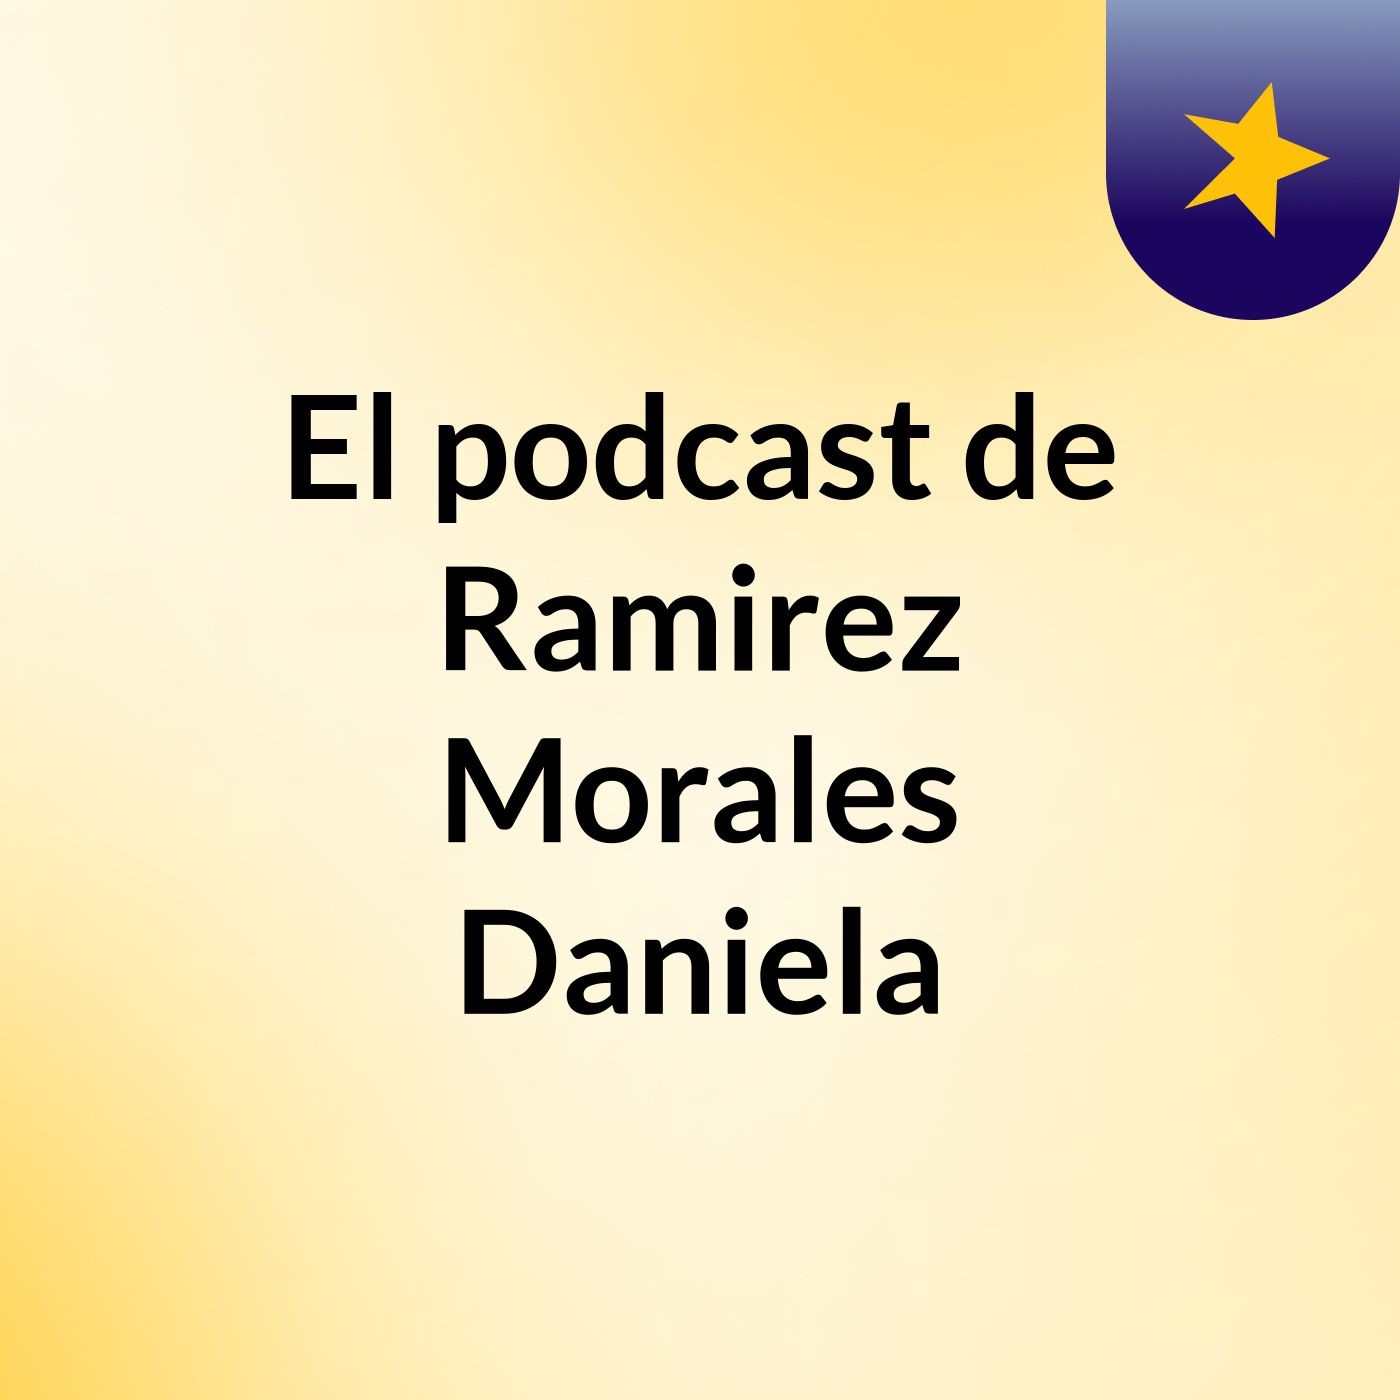 El podcast de Ramirez Morales Daniela